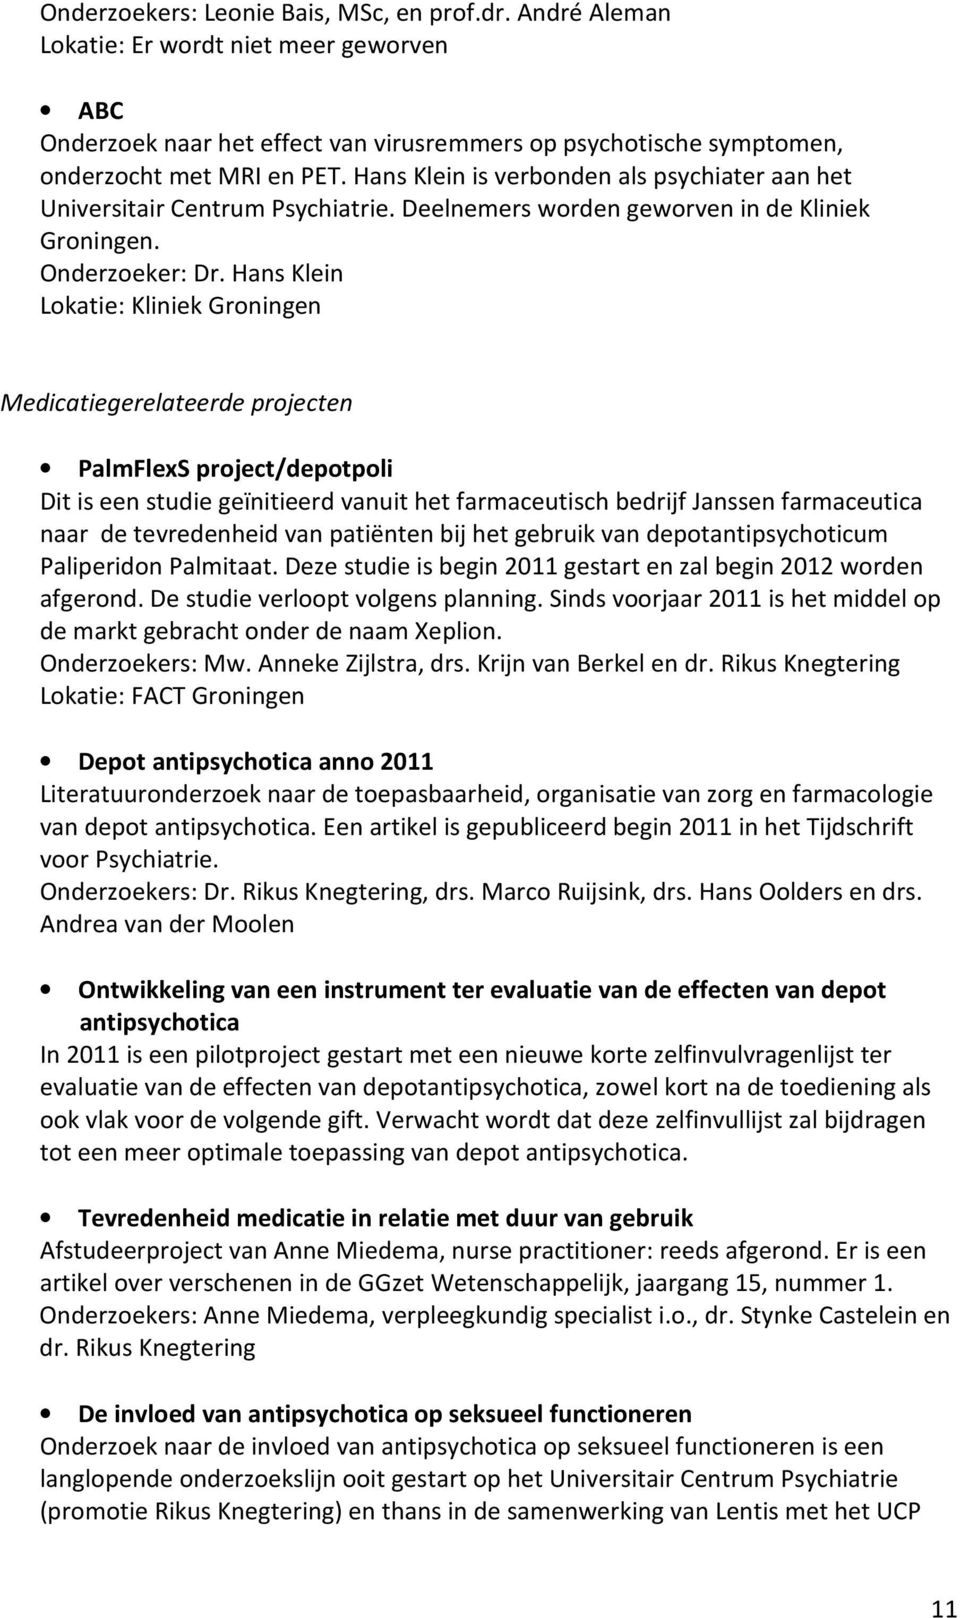 Hans Klein Lokatie: Kliniek Groningen Medicatiegerelateerde projecten PalmFlexS project/depotpoli Dit is een studie geïnitieerd vanuit het farmaceutisch bedrijf Janssen farmaceutica naar de